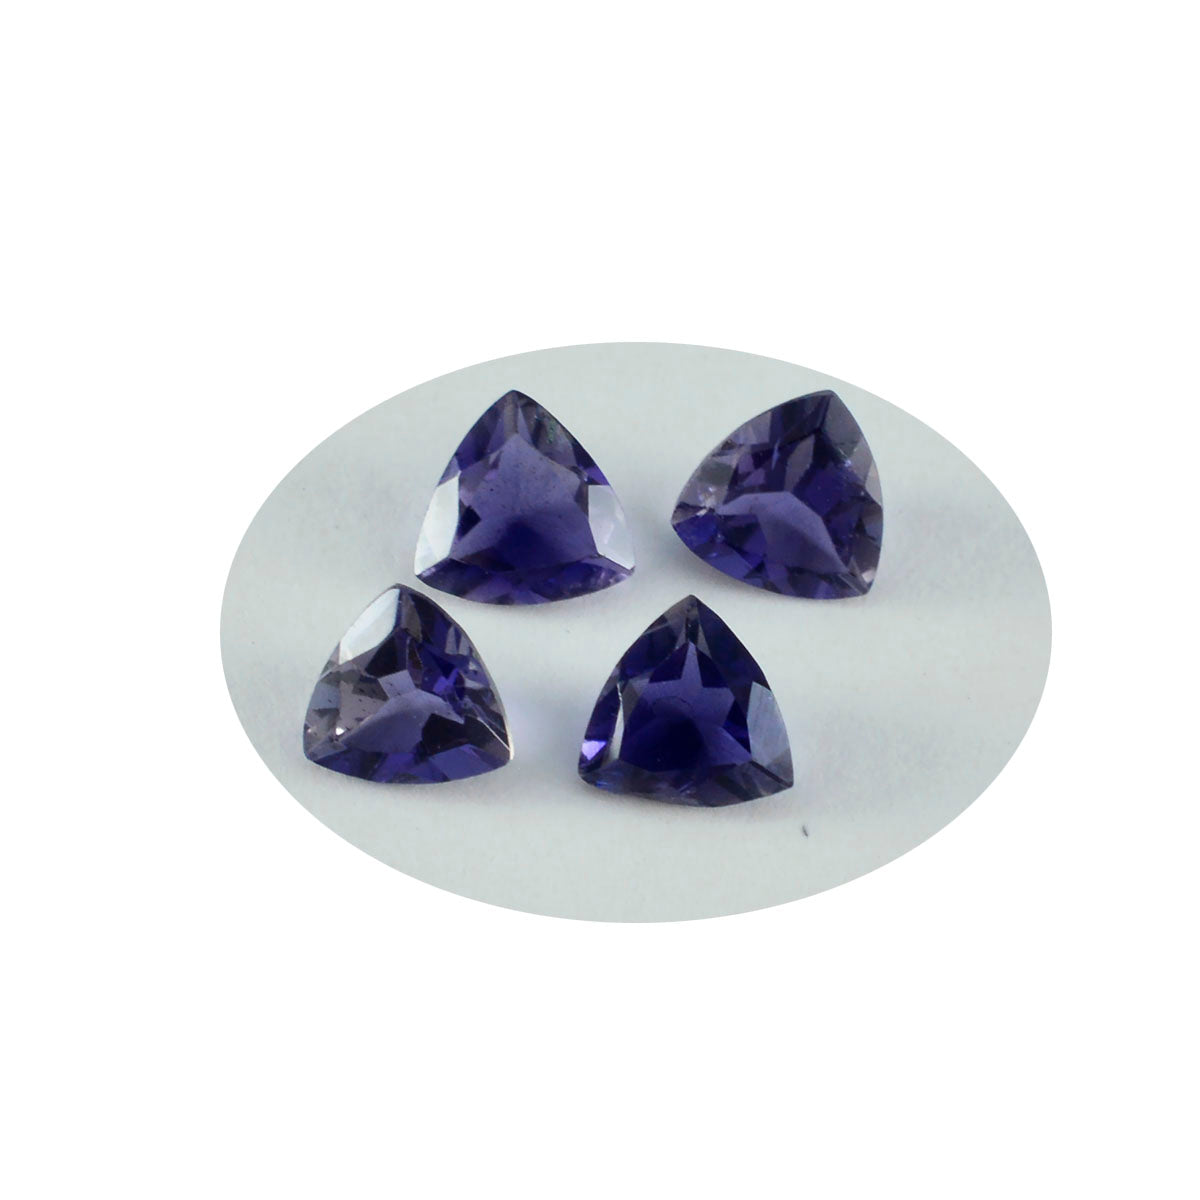 Riyogems 1 pièce d'iolite bleue à facettes 9x9mm en forme de trillion de belles pierres précieuses de qualité